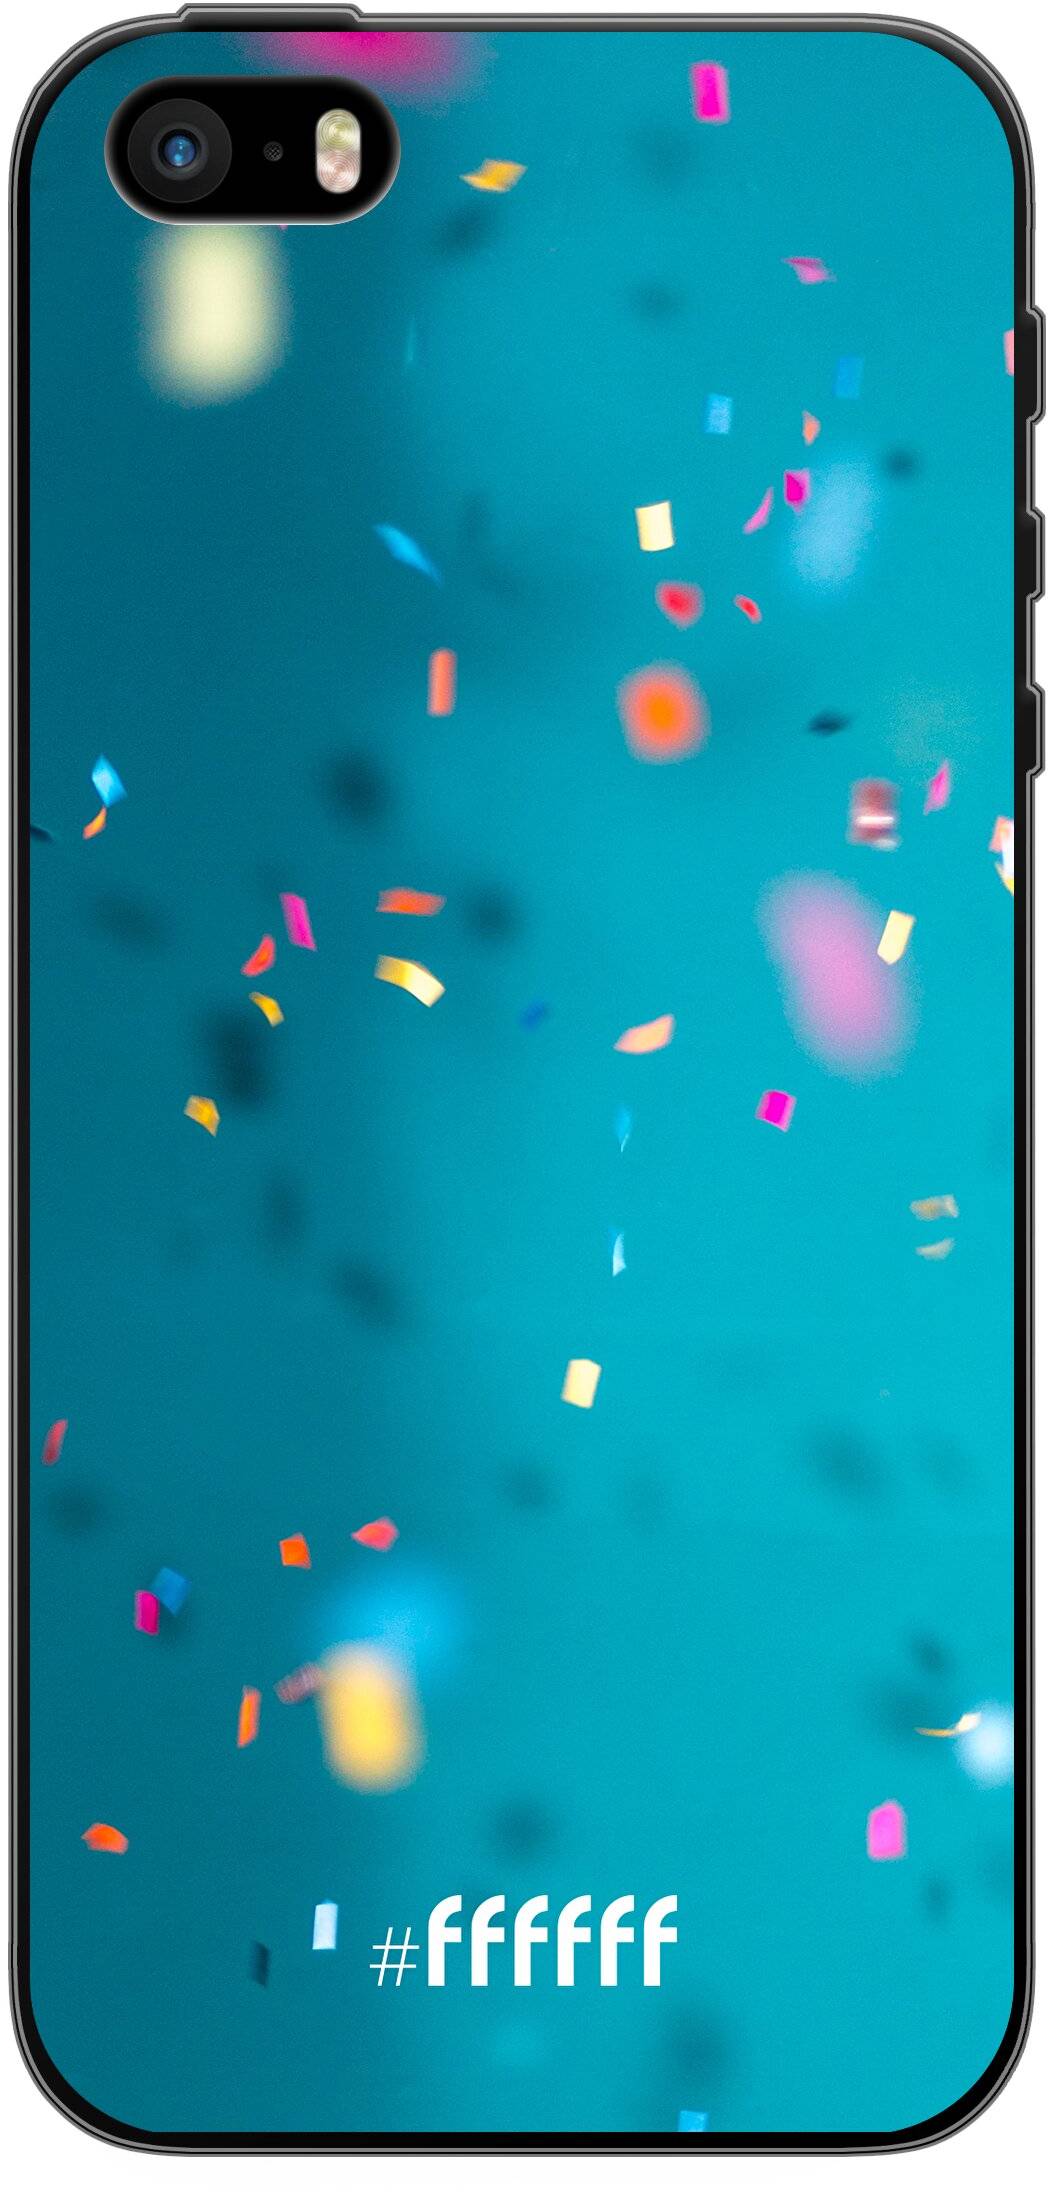 Confetti iPhone 5s